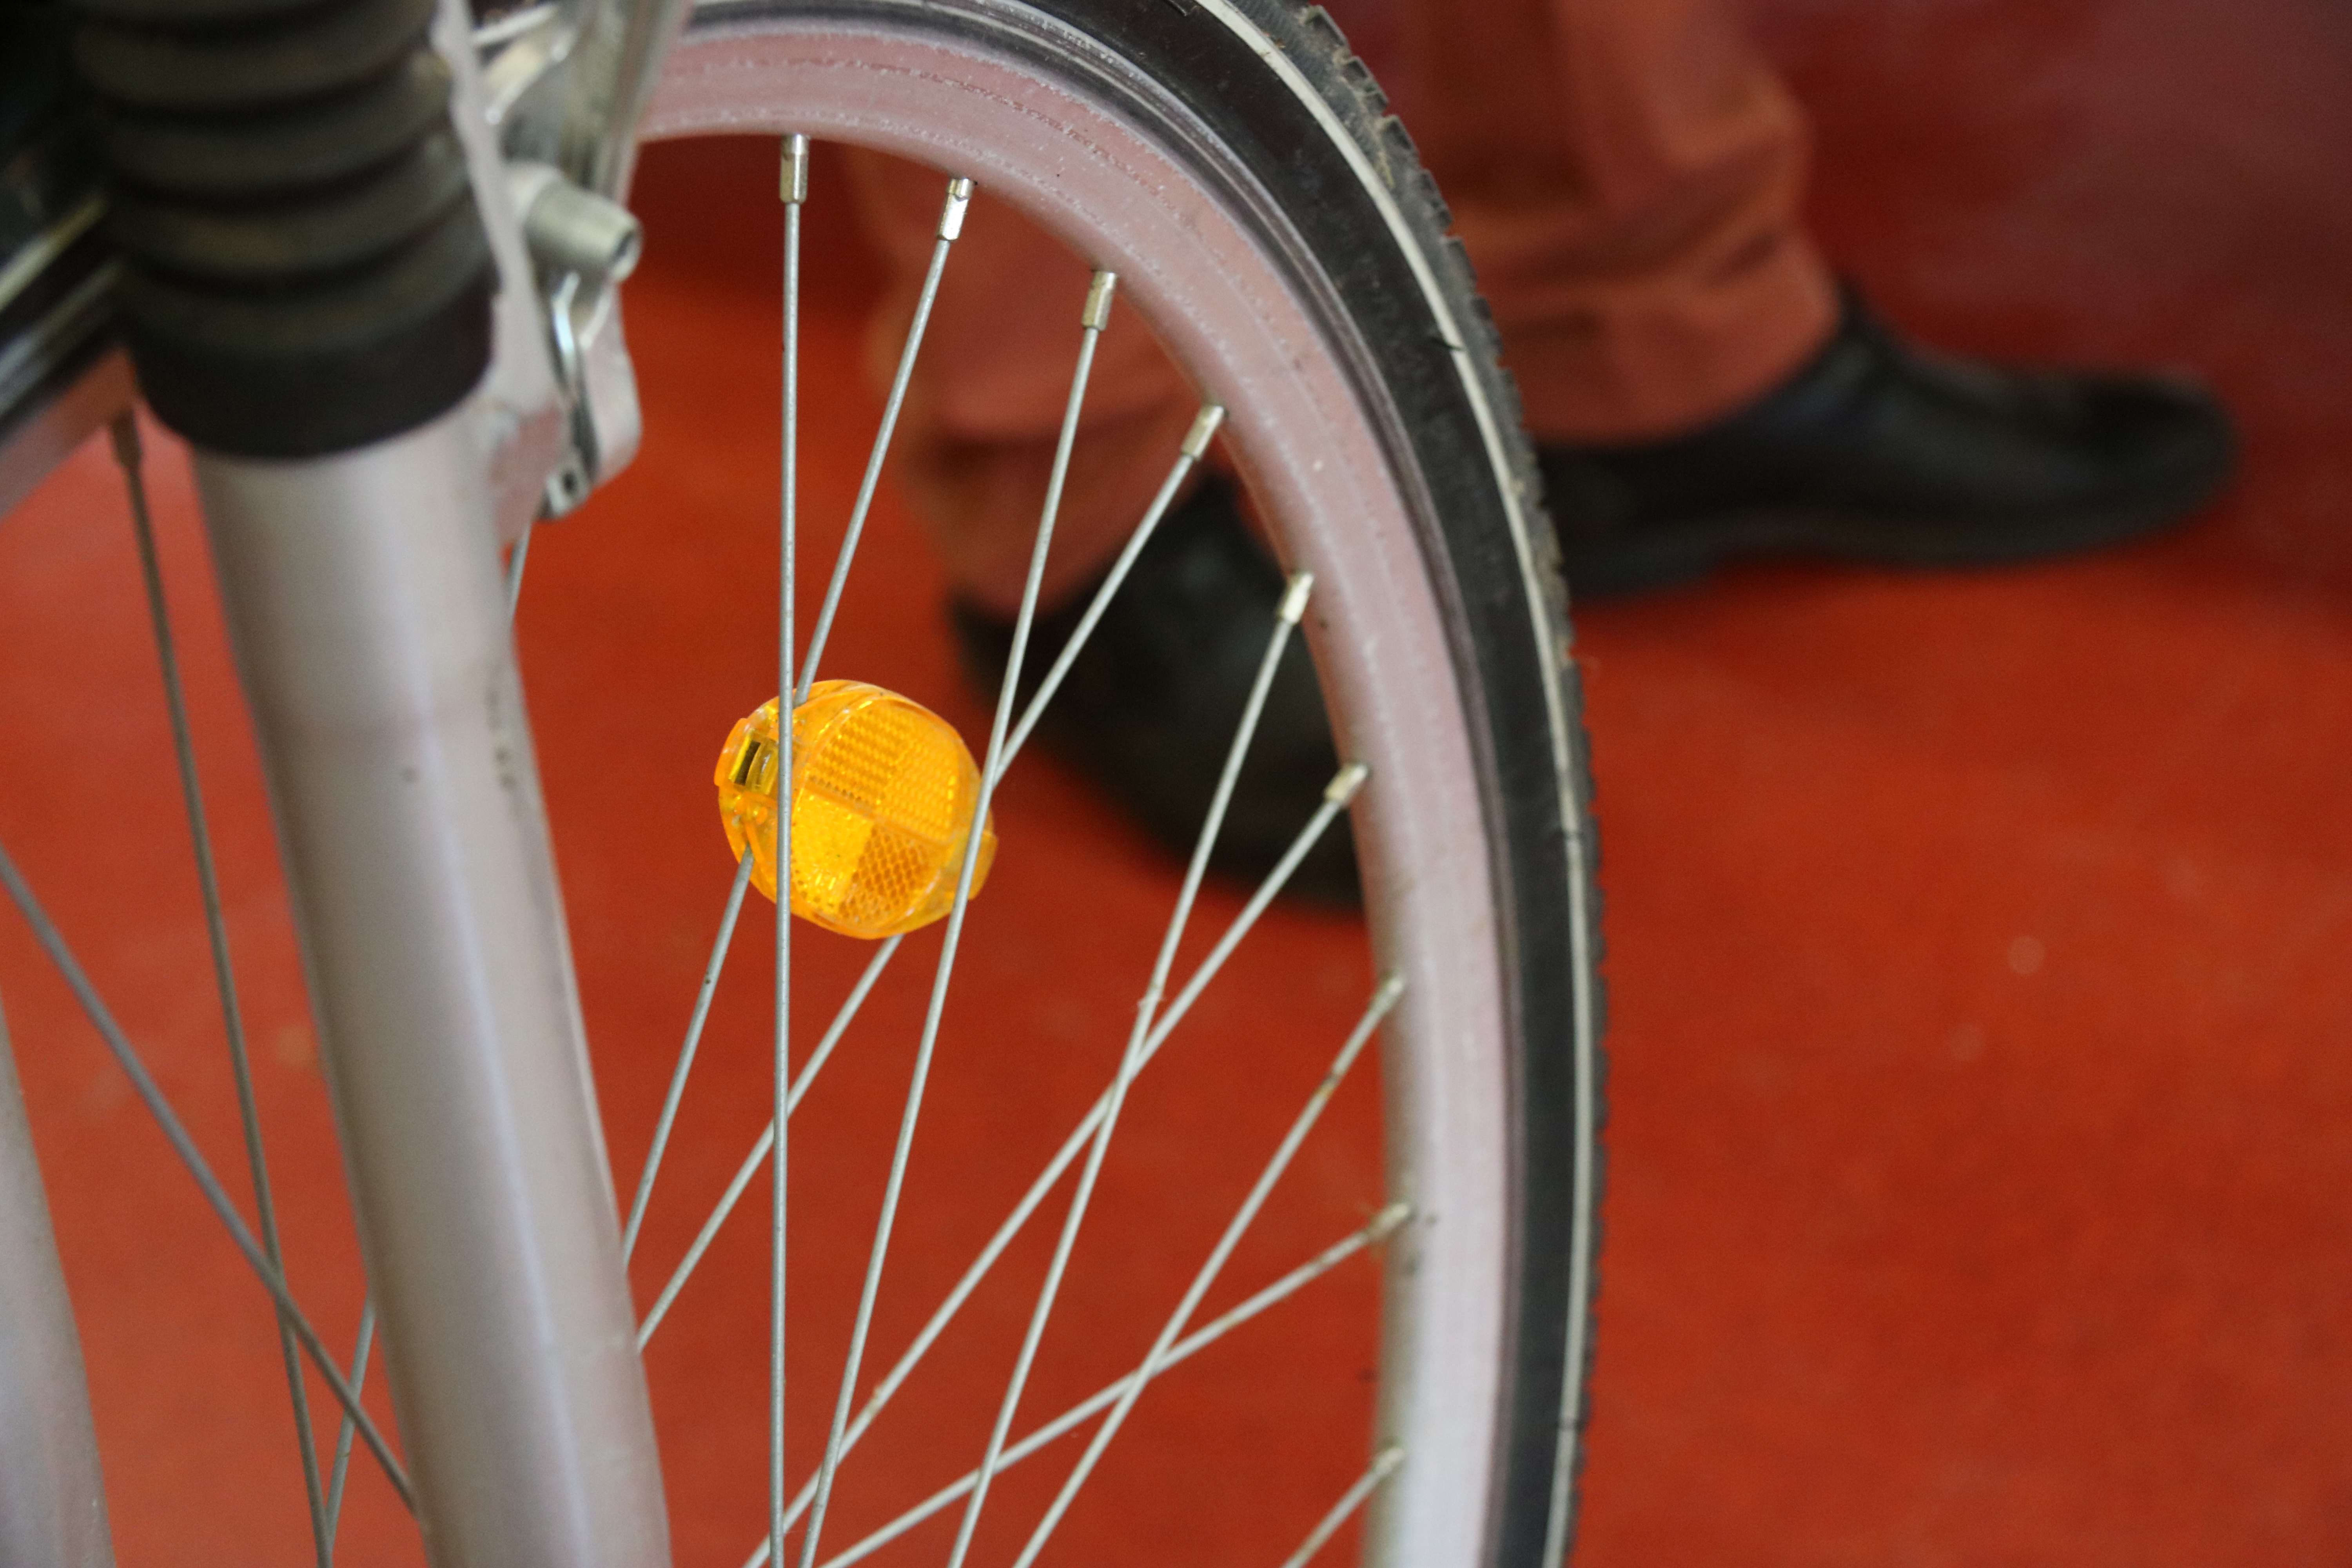 Das Speichenrad eines Fahrrades mit einem gelben Reflektor